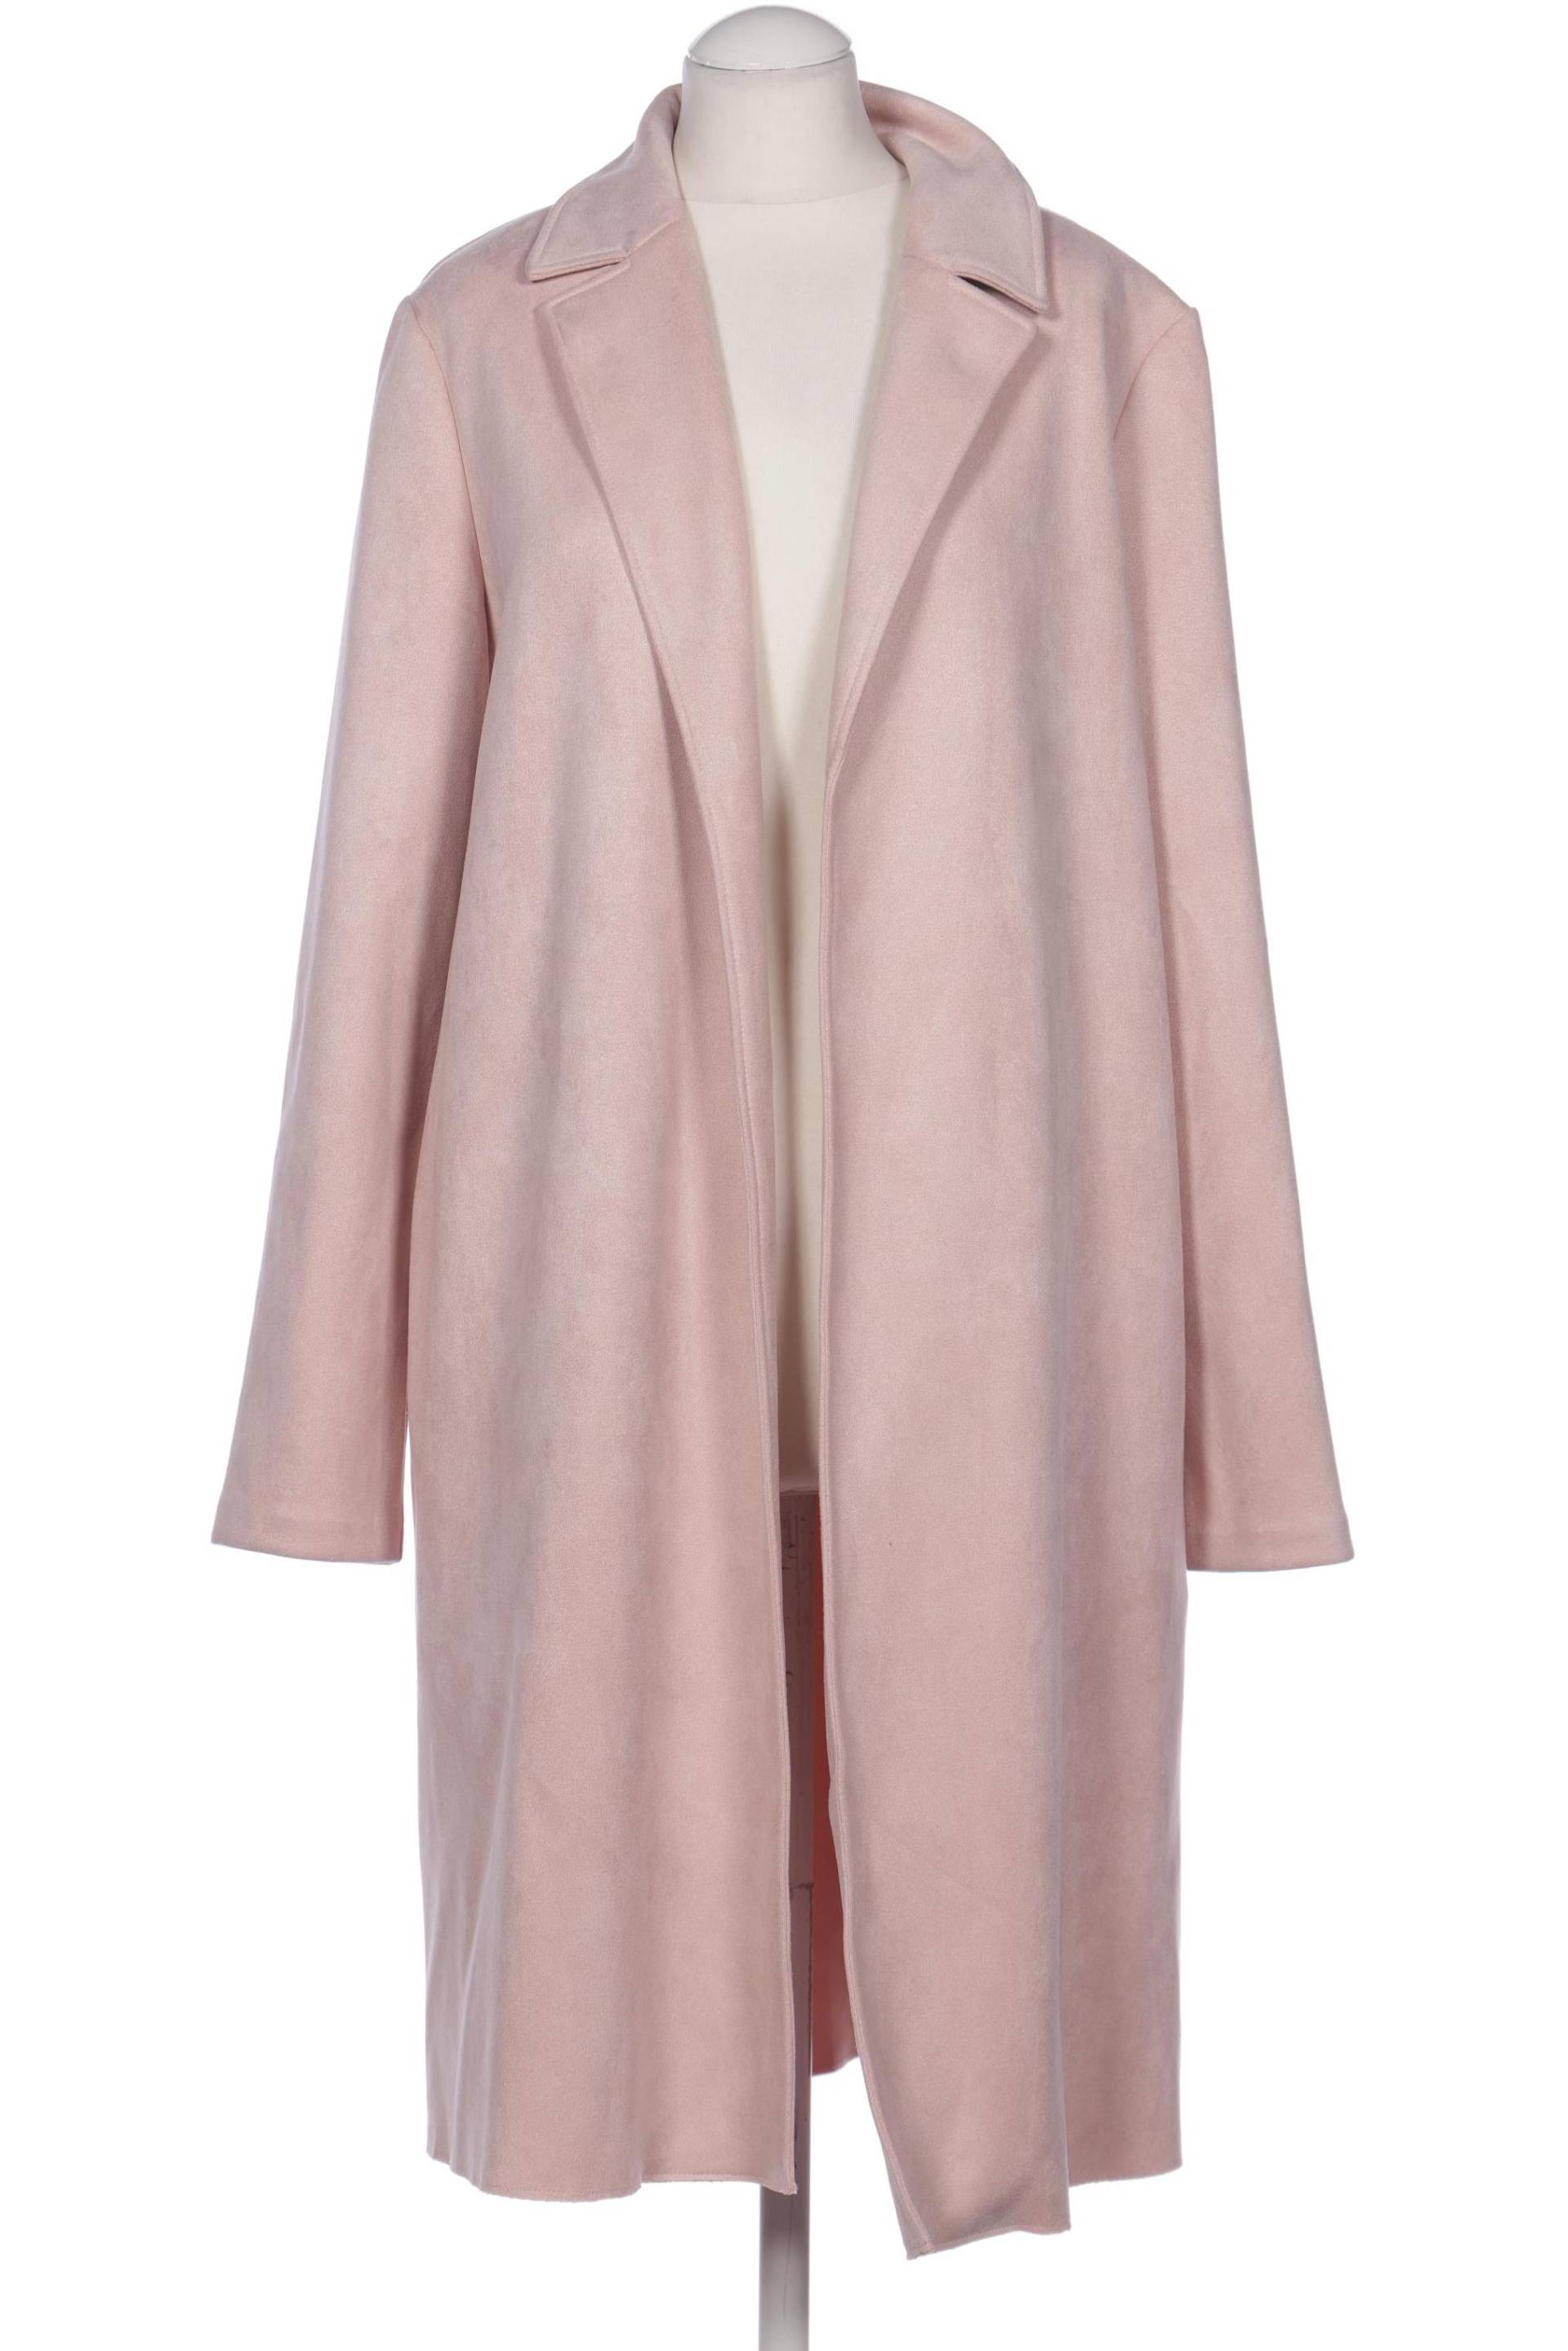 Zara Damen Mantel, pink, Gr. 38 von ZARA